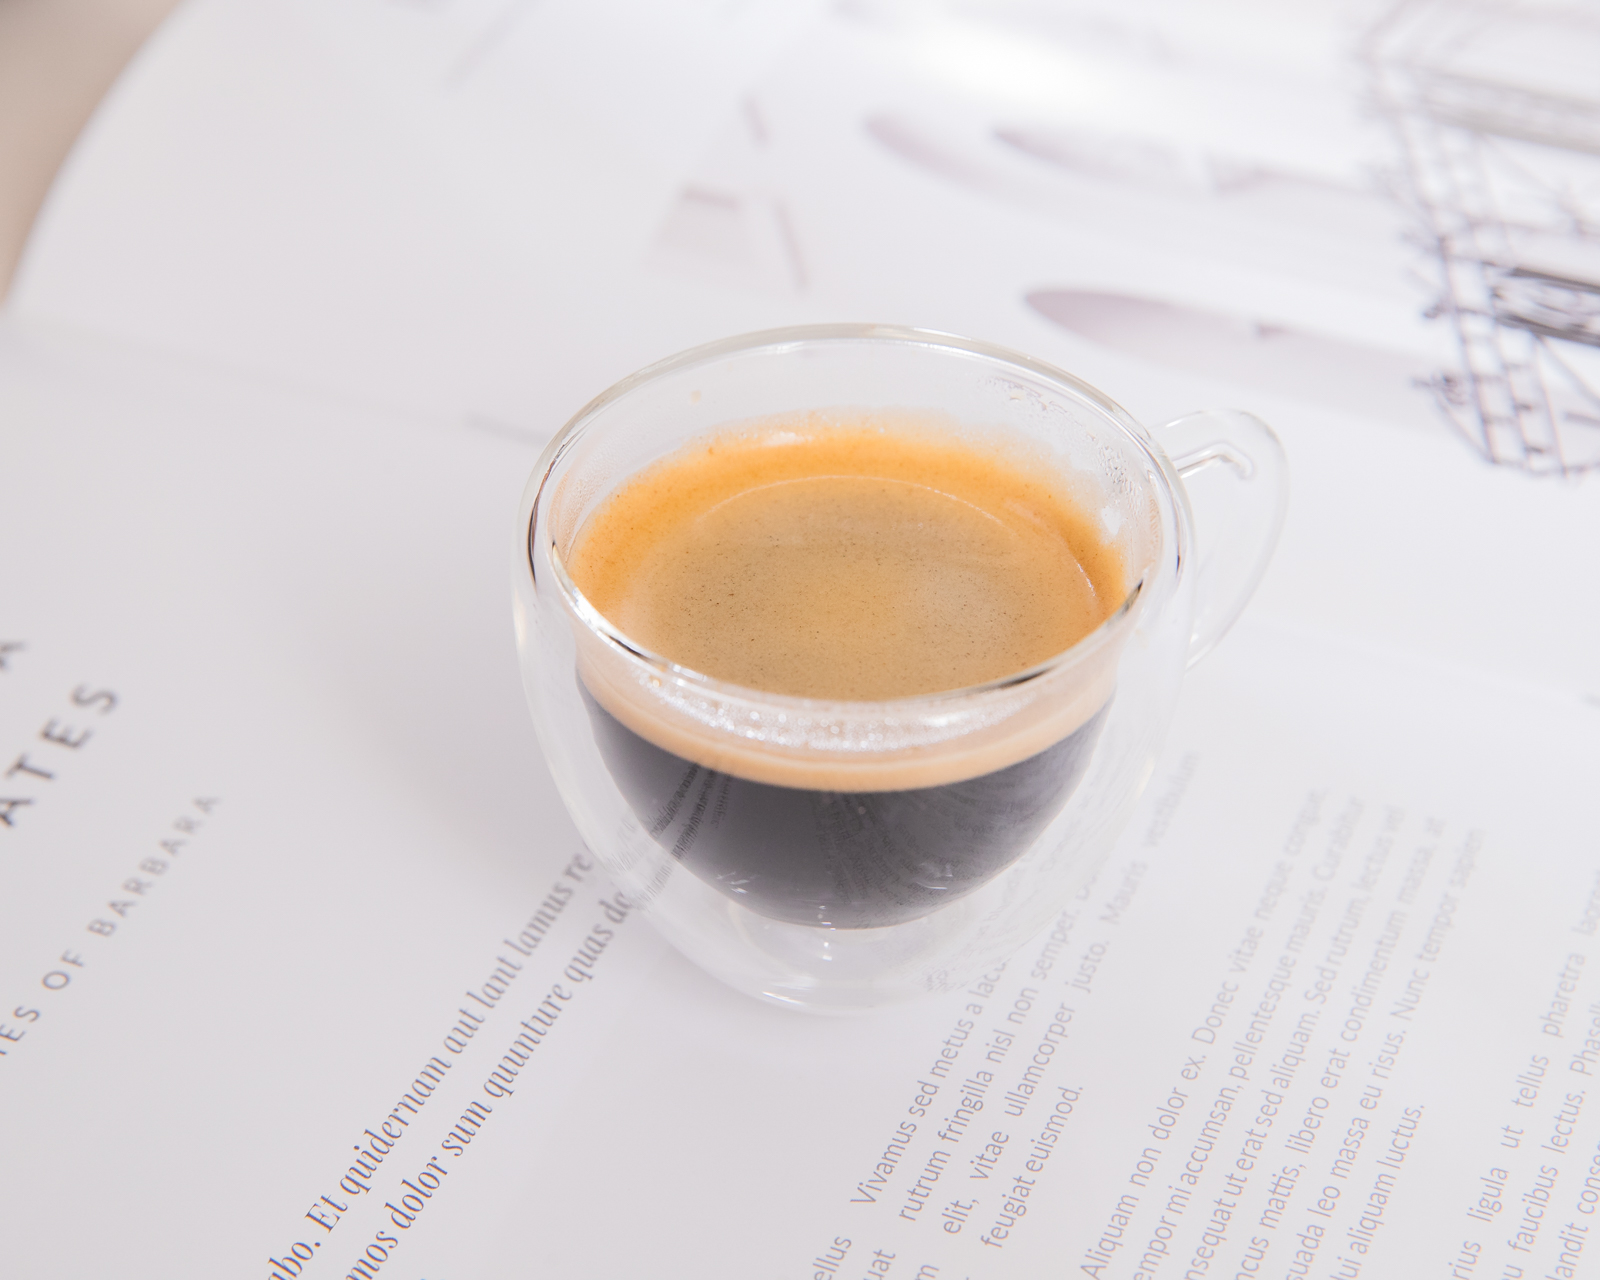 飛利浦全自動義式咖啡機 LatteGo EP3246 無管線雲朵拿鐵咖啡機 一鍵享受綿密奶泡咖啡